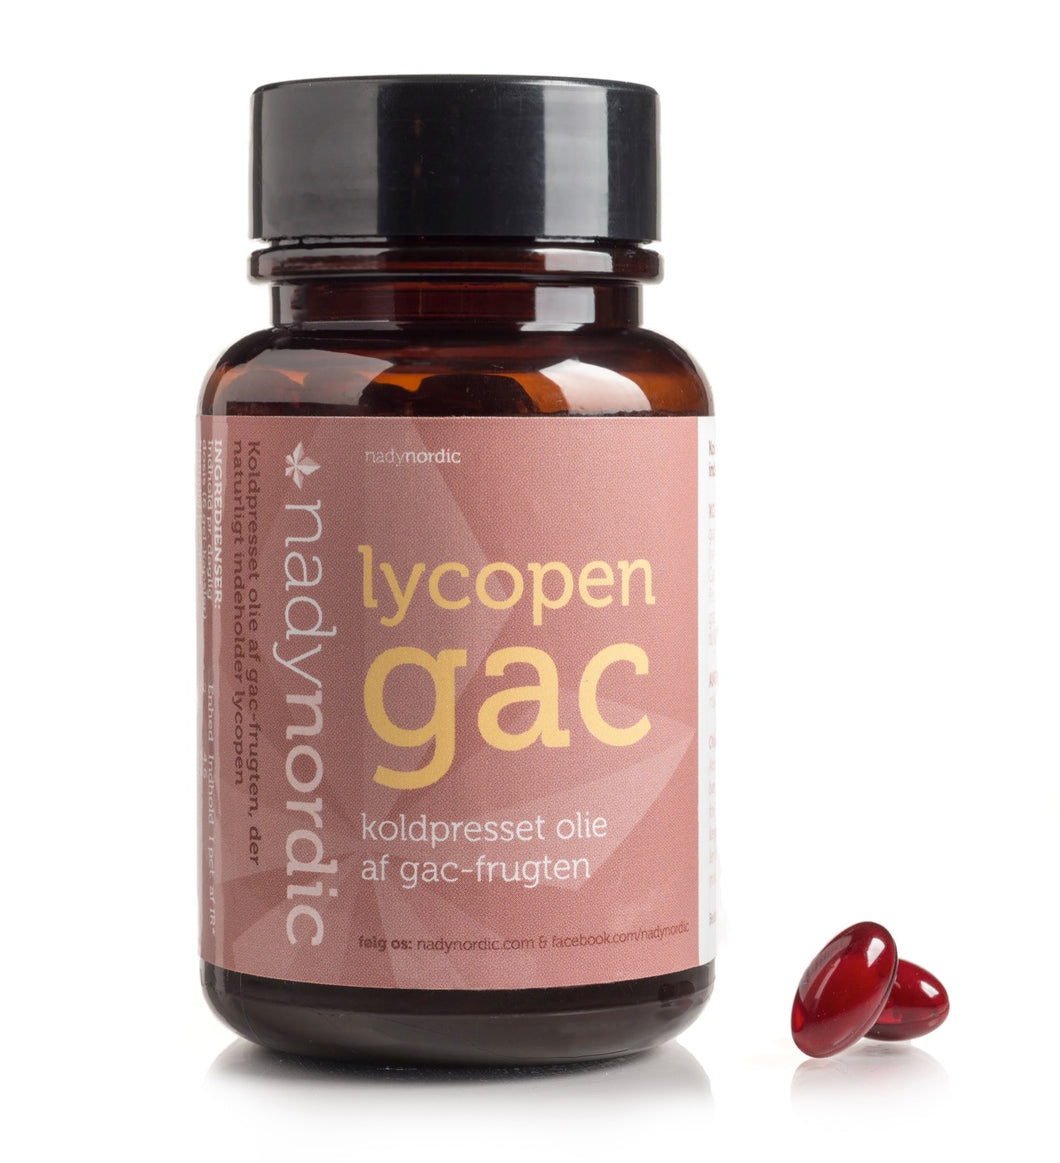 Gac-frugt ekstrakt med Lycopen<br>770 mg  (100 kapsler)